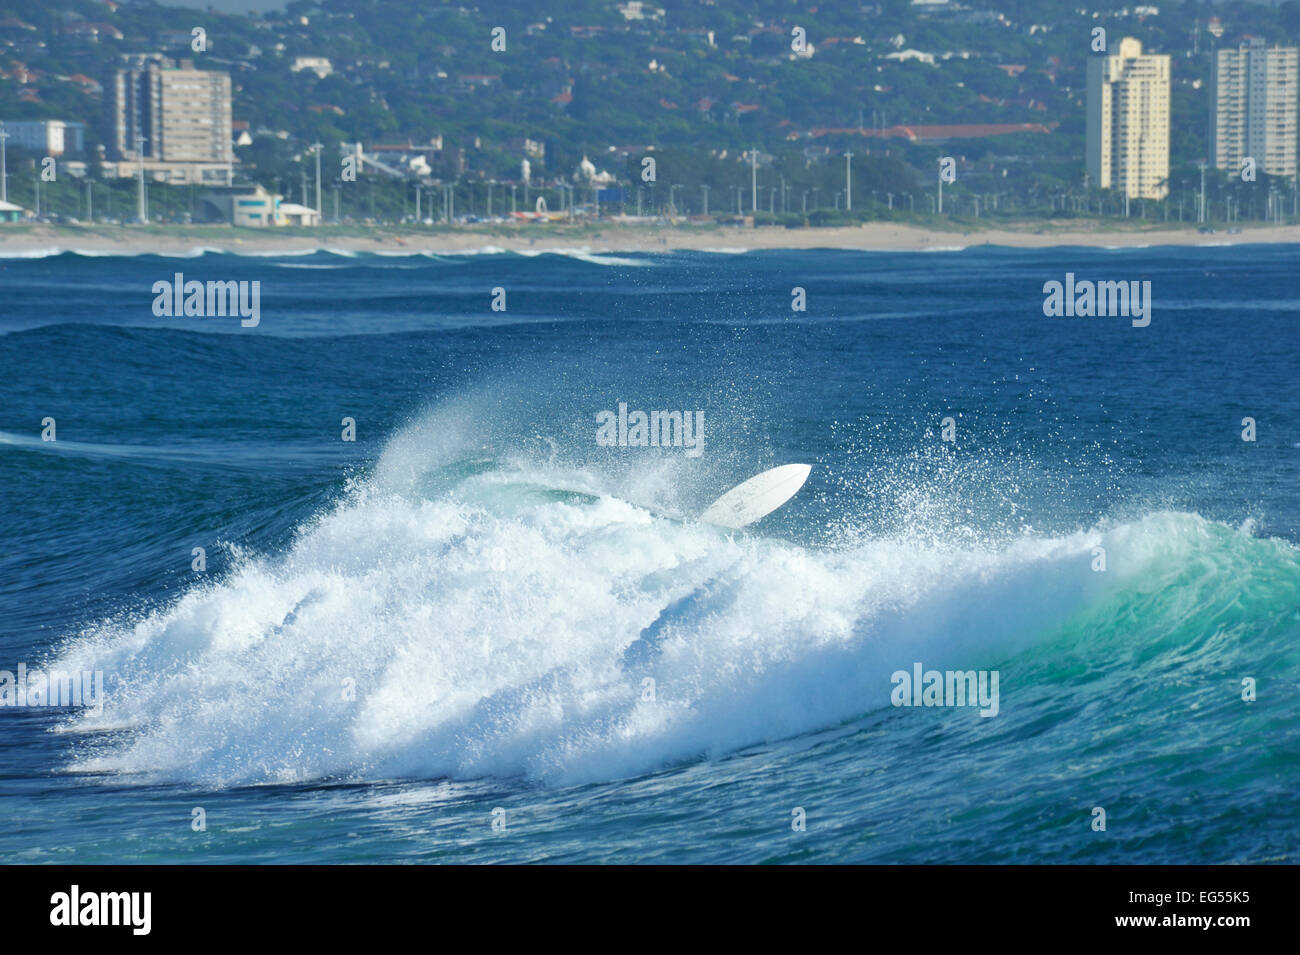 Surf blanc voler hors de l'eau après avoir surfer essuyer le déferlement, baie de Durban, le KwaZulu-Natal, Afrique du Sud Banque D'Images